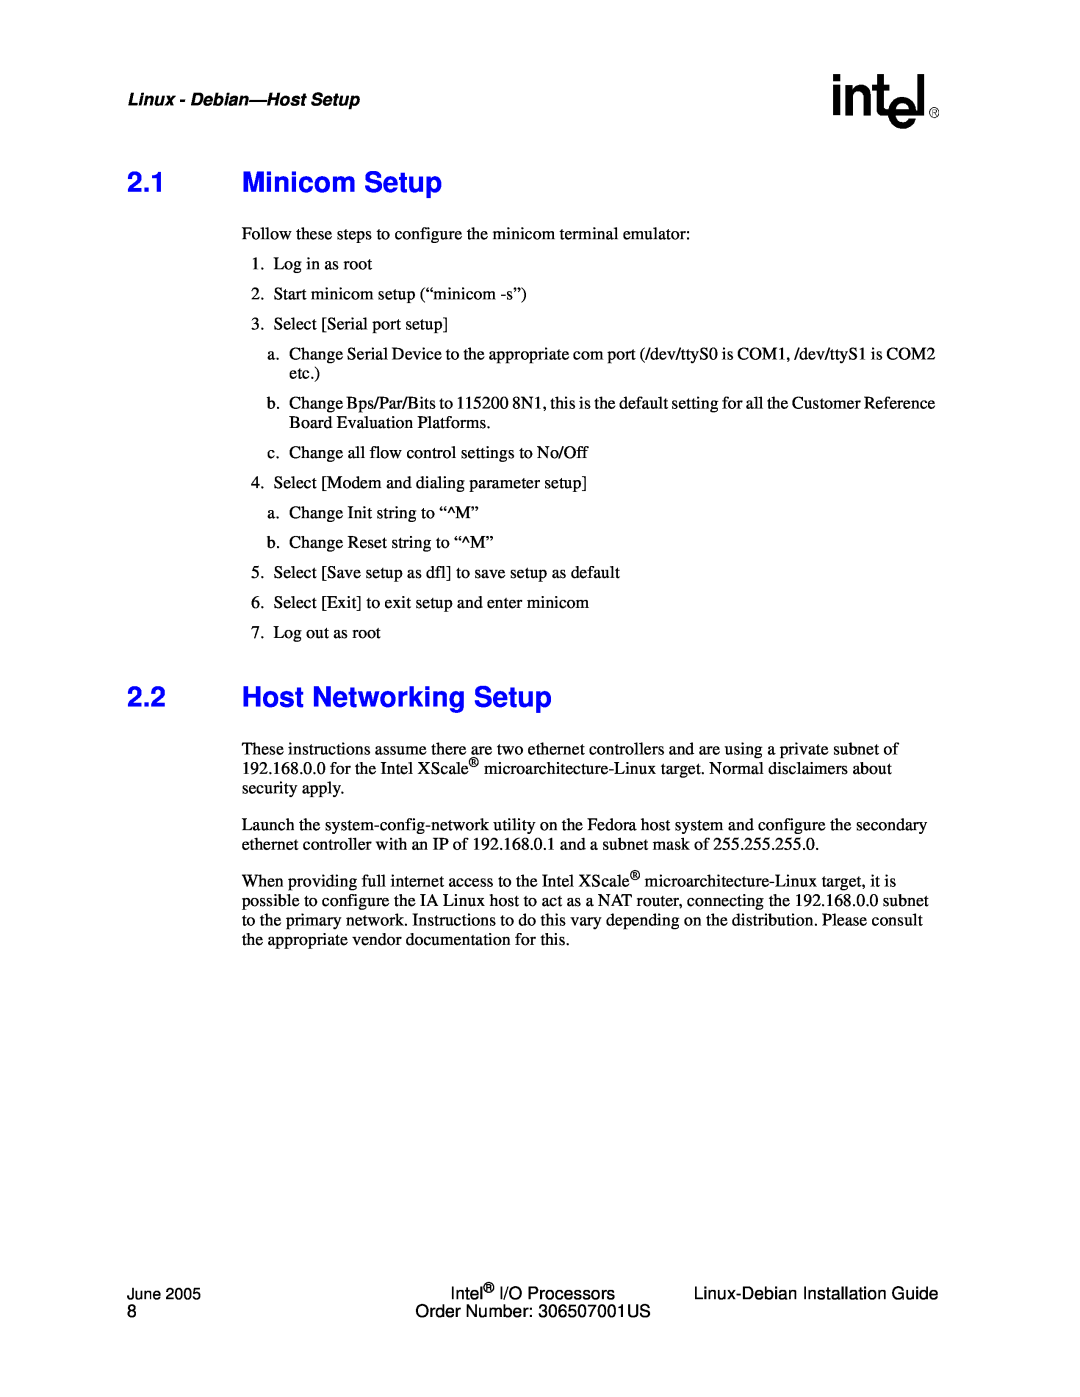 Intel I/O Processor manual 2.1Minicom Setup, 2.2Host Networking Setup, Linux - Debian—HostSetup 